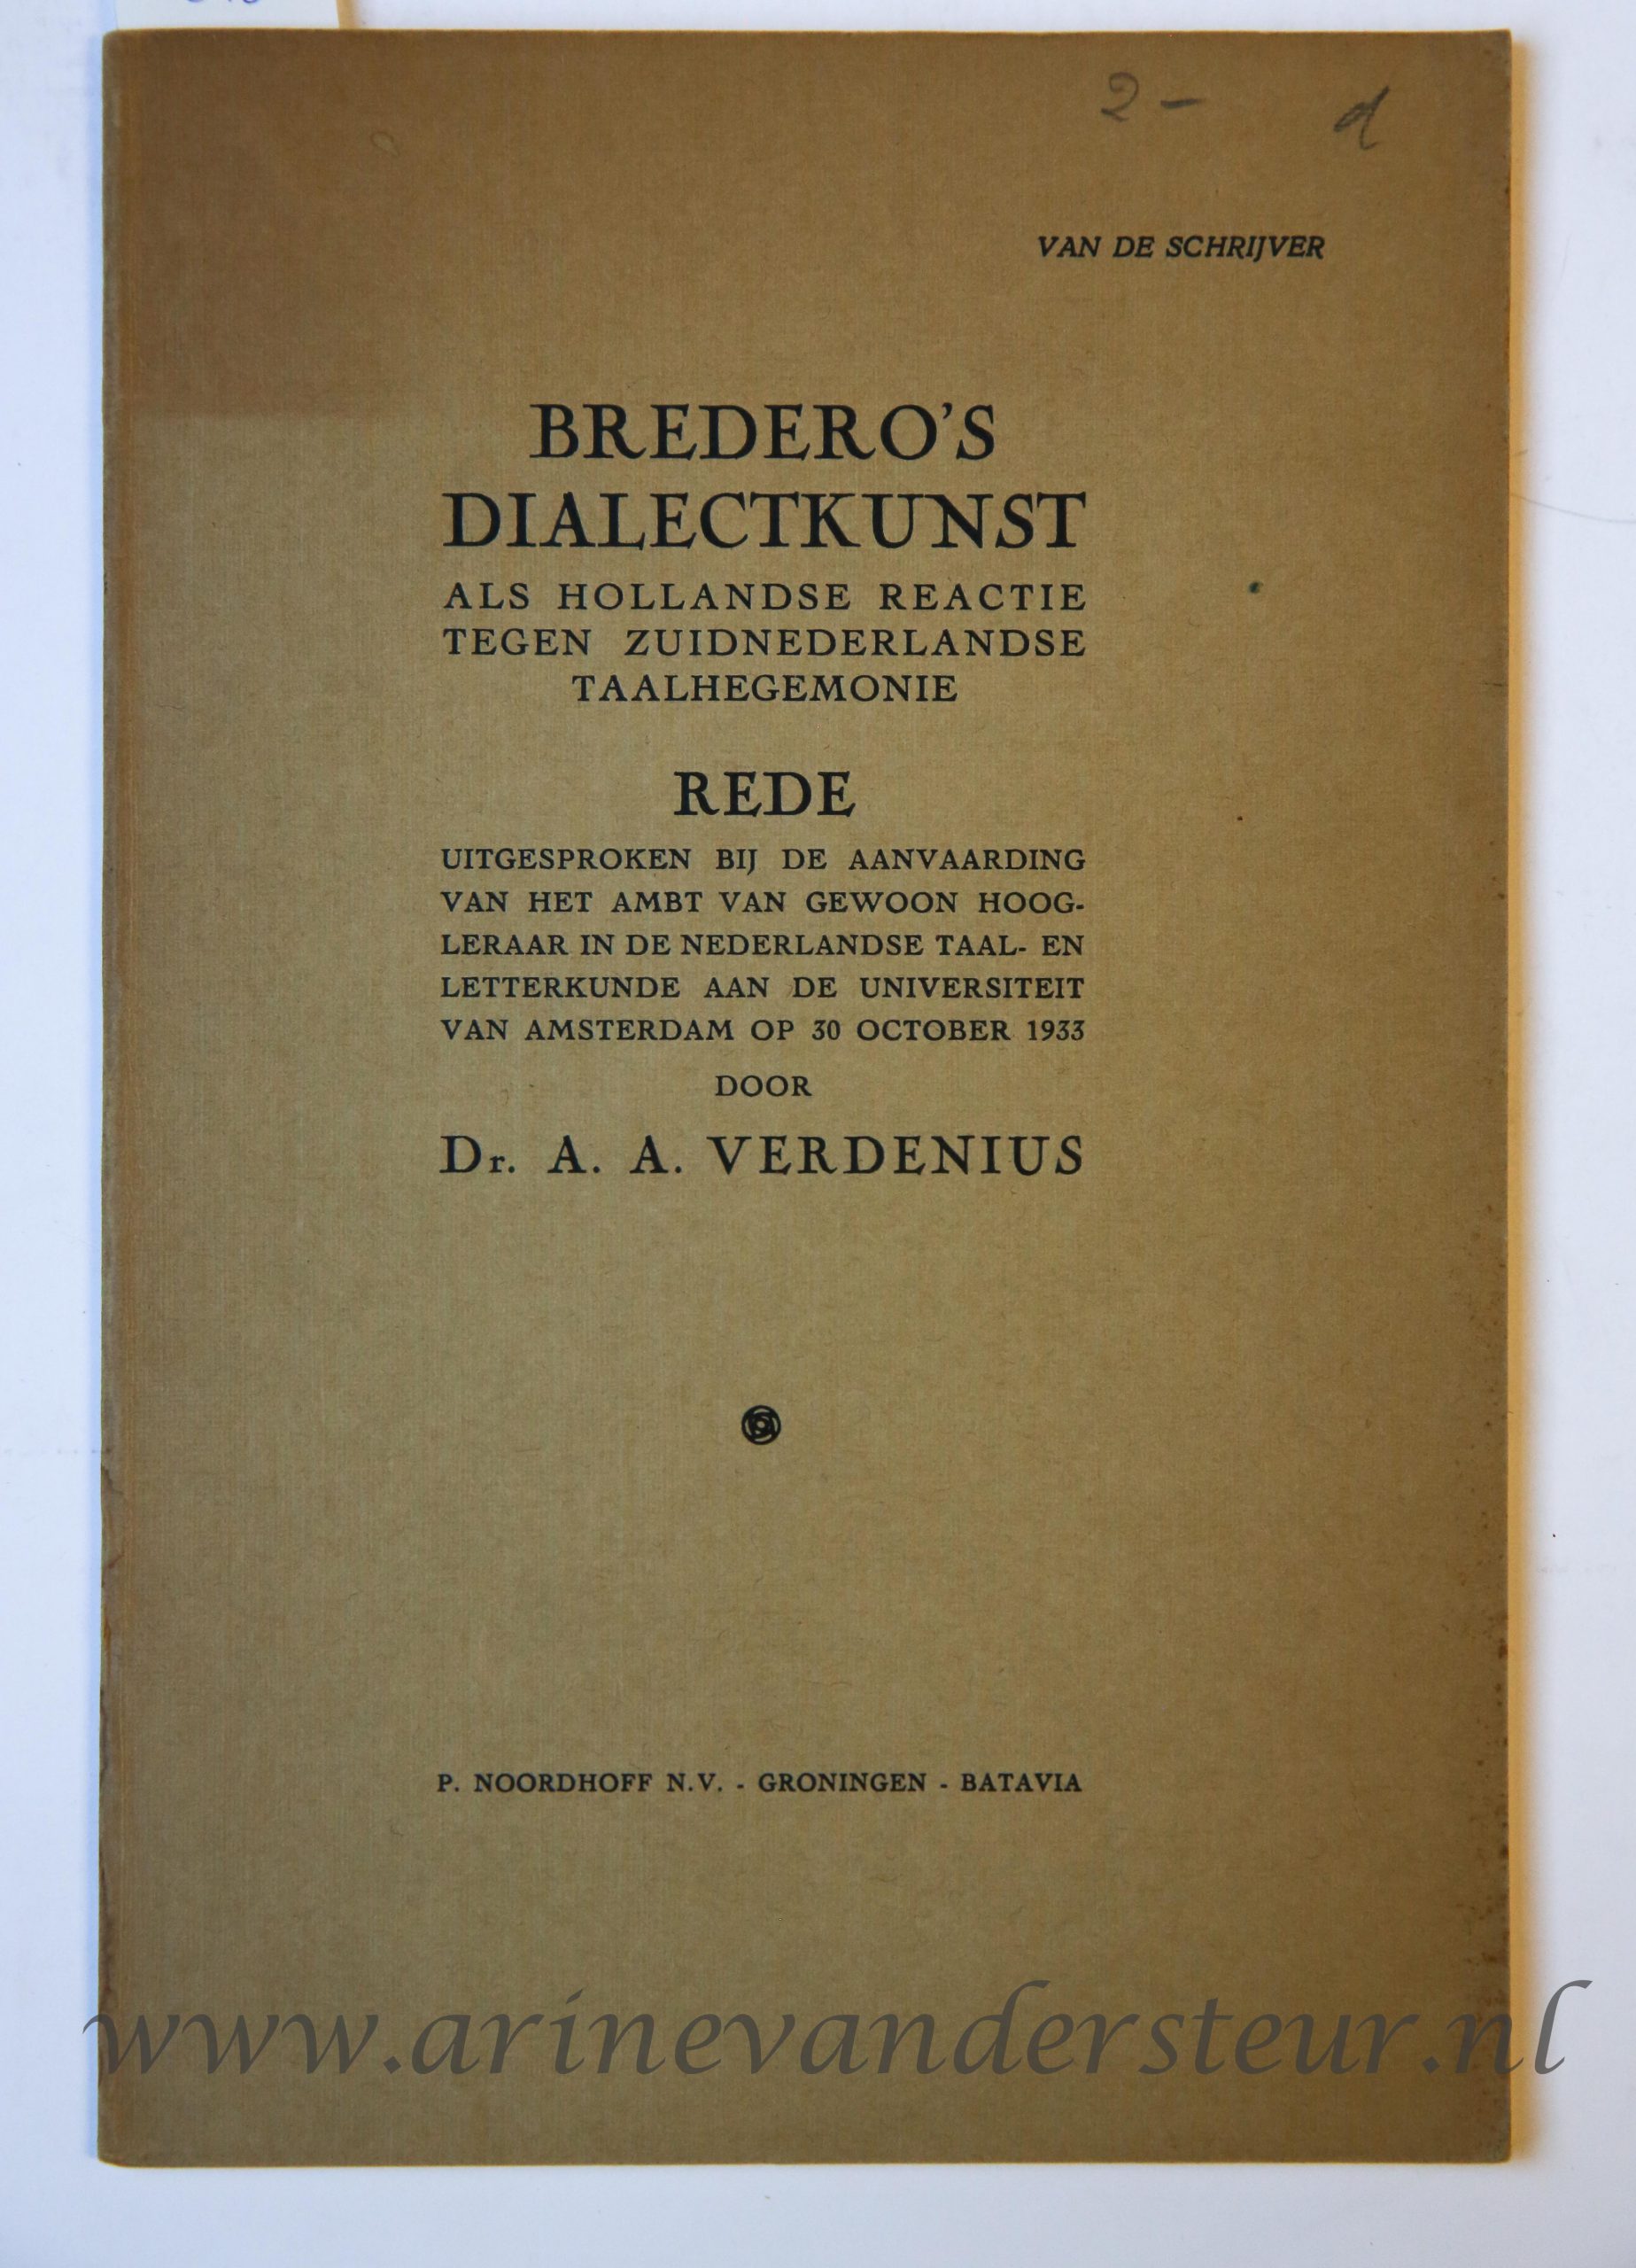 Bredero's dialectkunst als Hollandse reactie tegen Zuidnederlandse taalhegemonie, Groningen, P. Noordhoff, 1933. Paper binding, 24 pp.